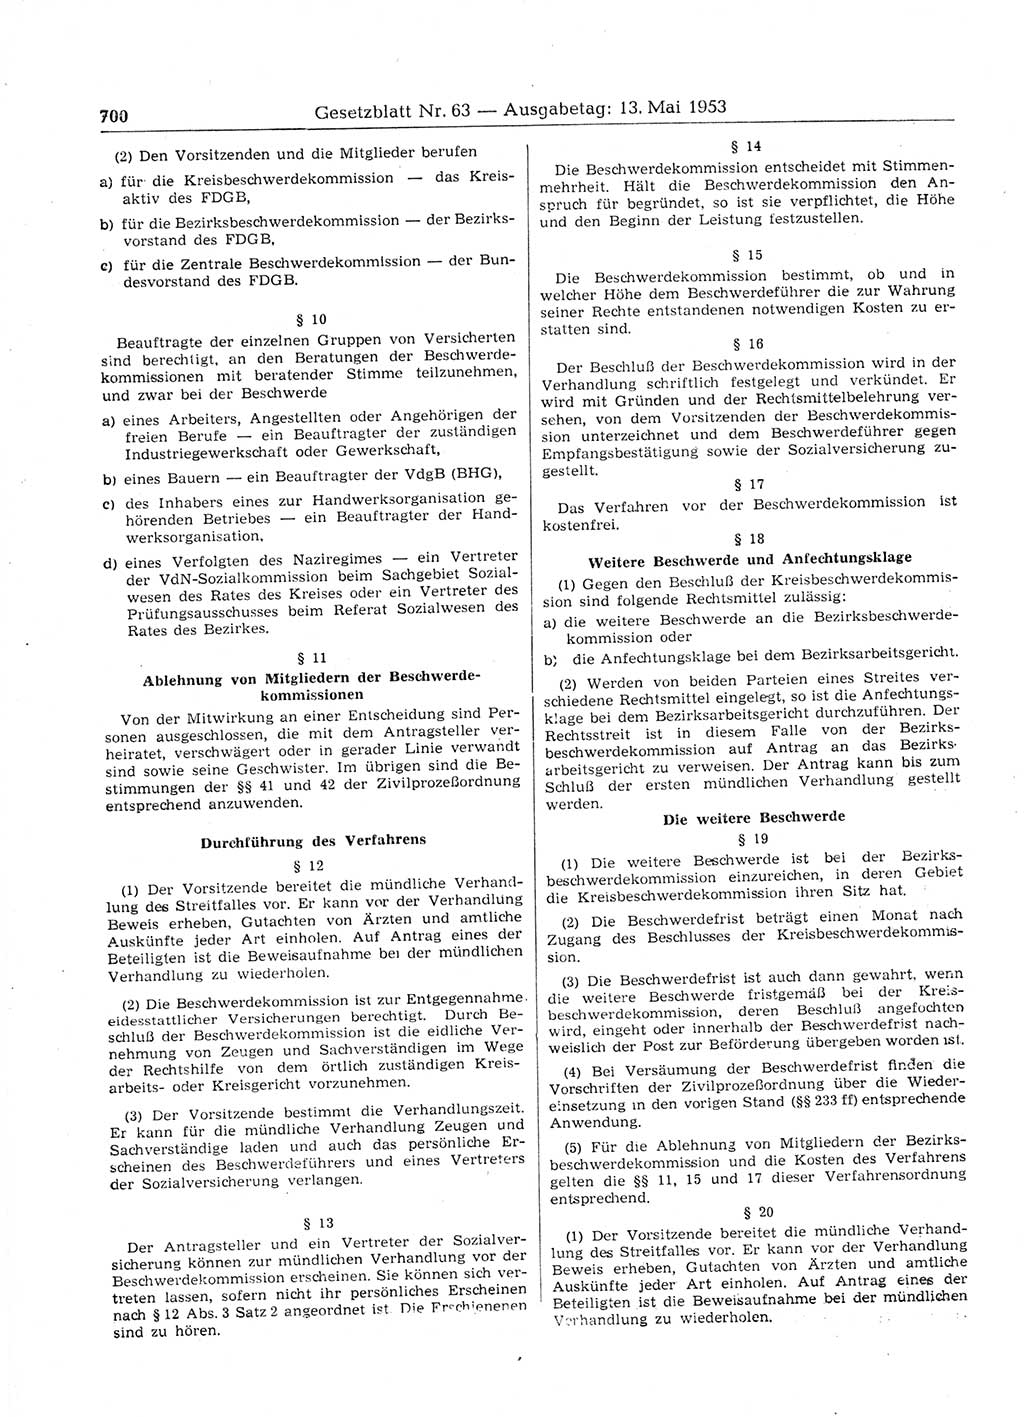 Gesetzblatt (GBl.) der Deutschen Demokratischen Republik (DDR) 1953, Seite 700 (GBl. DDR 1953, S. 700)